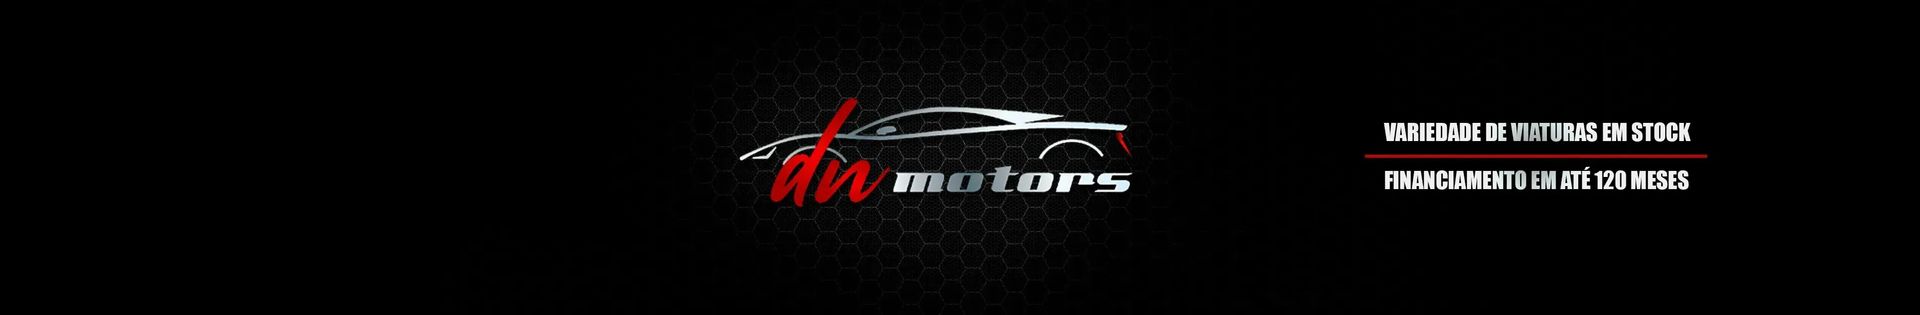 DN Motors top banner